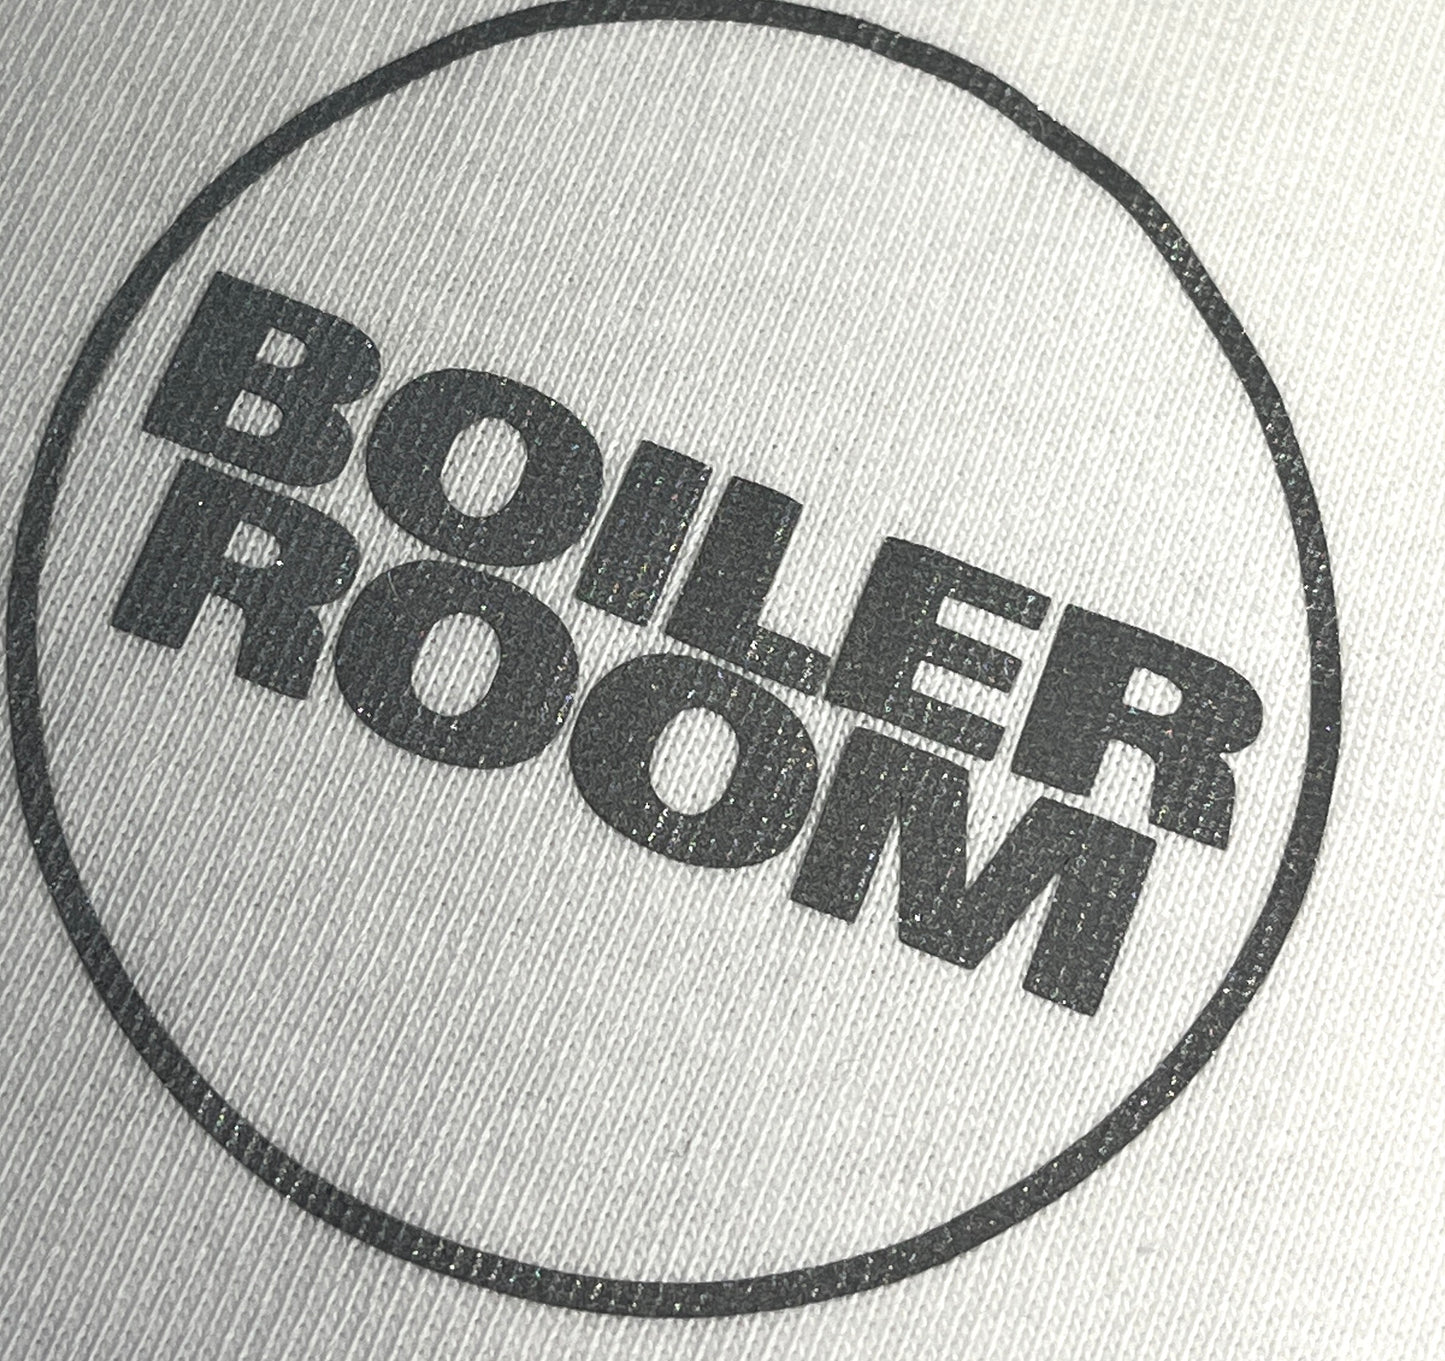 Vintage Boiler Room T-Shirt Concert DJ Tee Logo